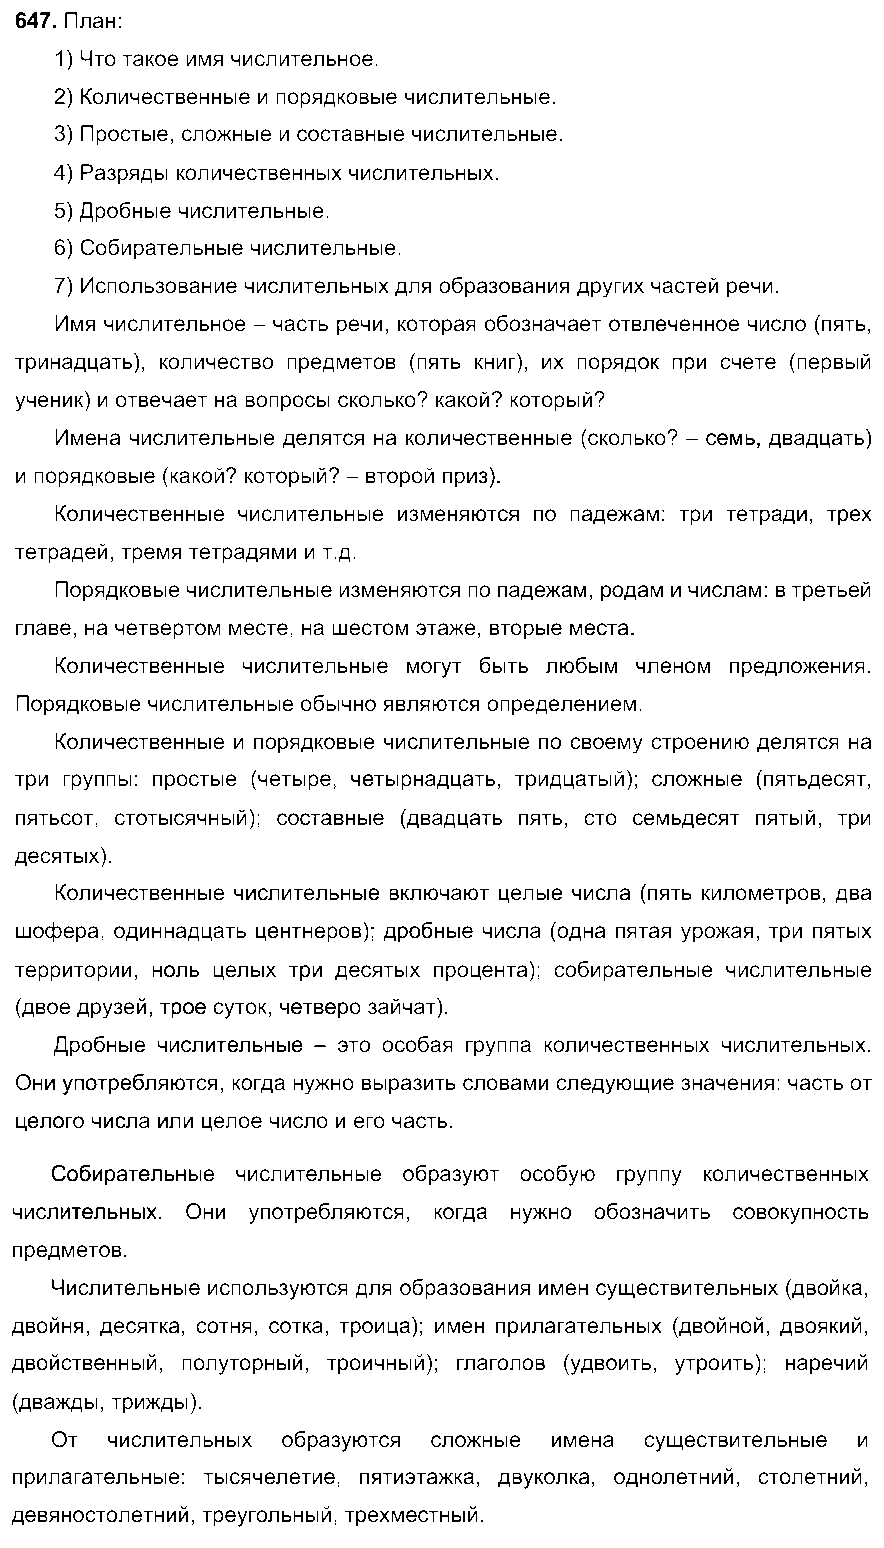 ГДЗ Русский язык 6 класс - 647